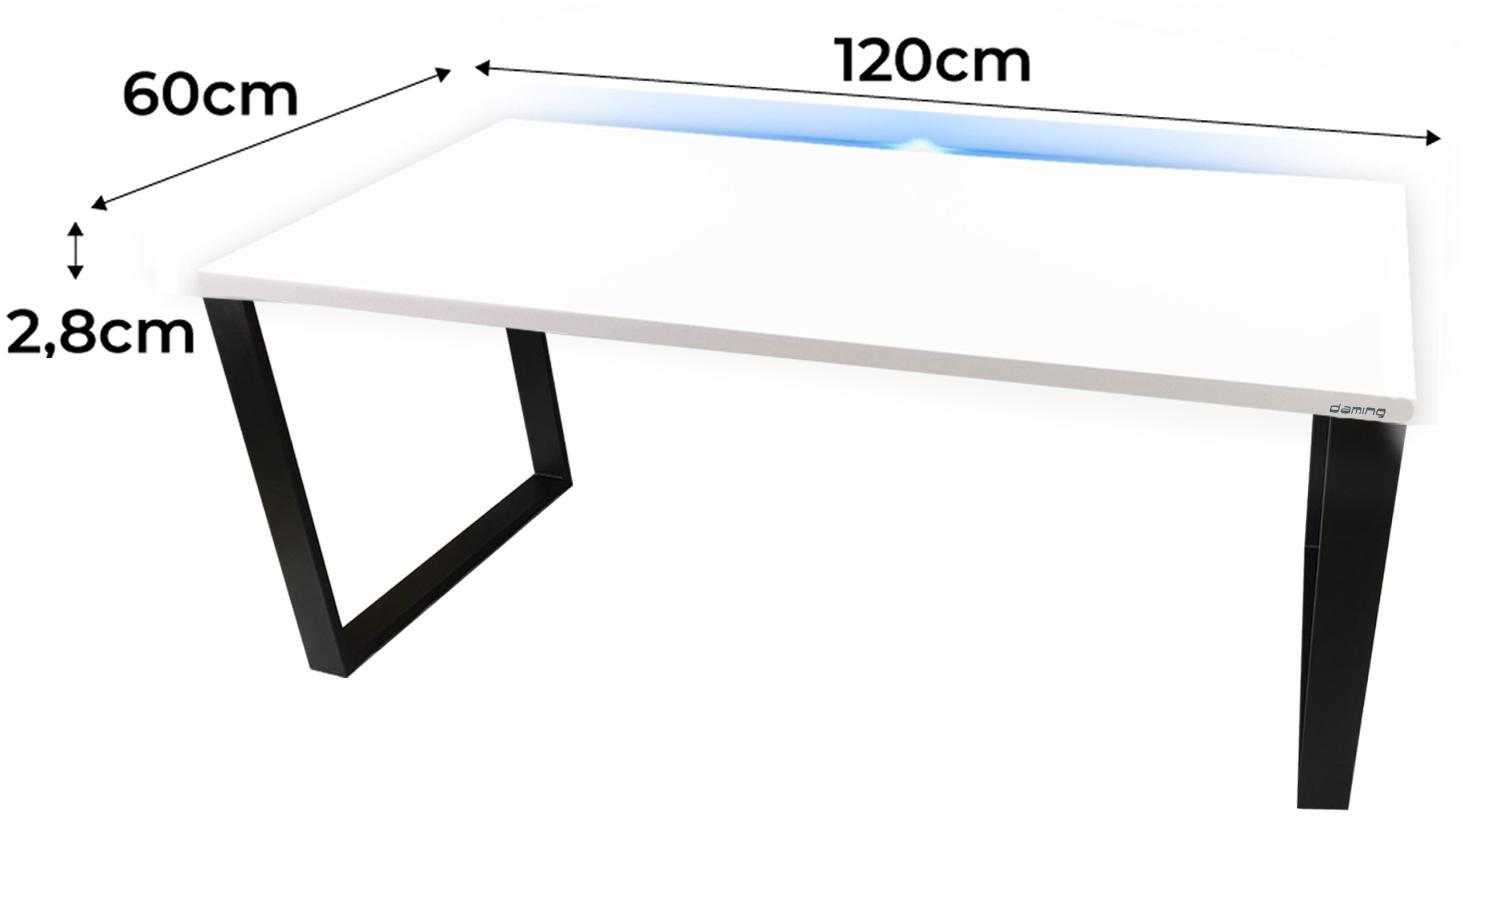 Biurko gamingowe 120x60x2.8 cm białe loftowe led stabilne do pokoju gracza nr. 2